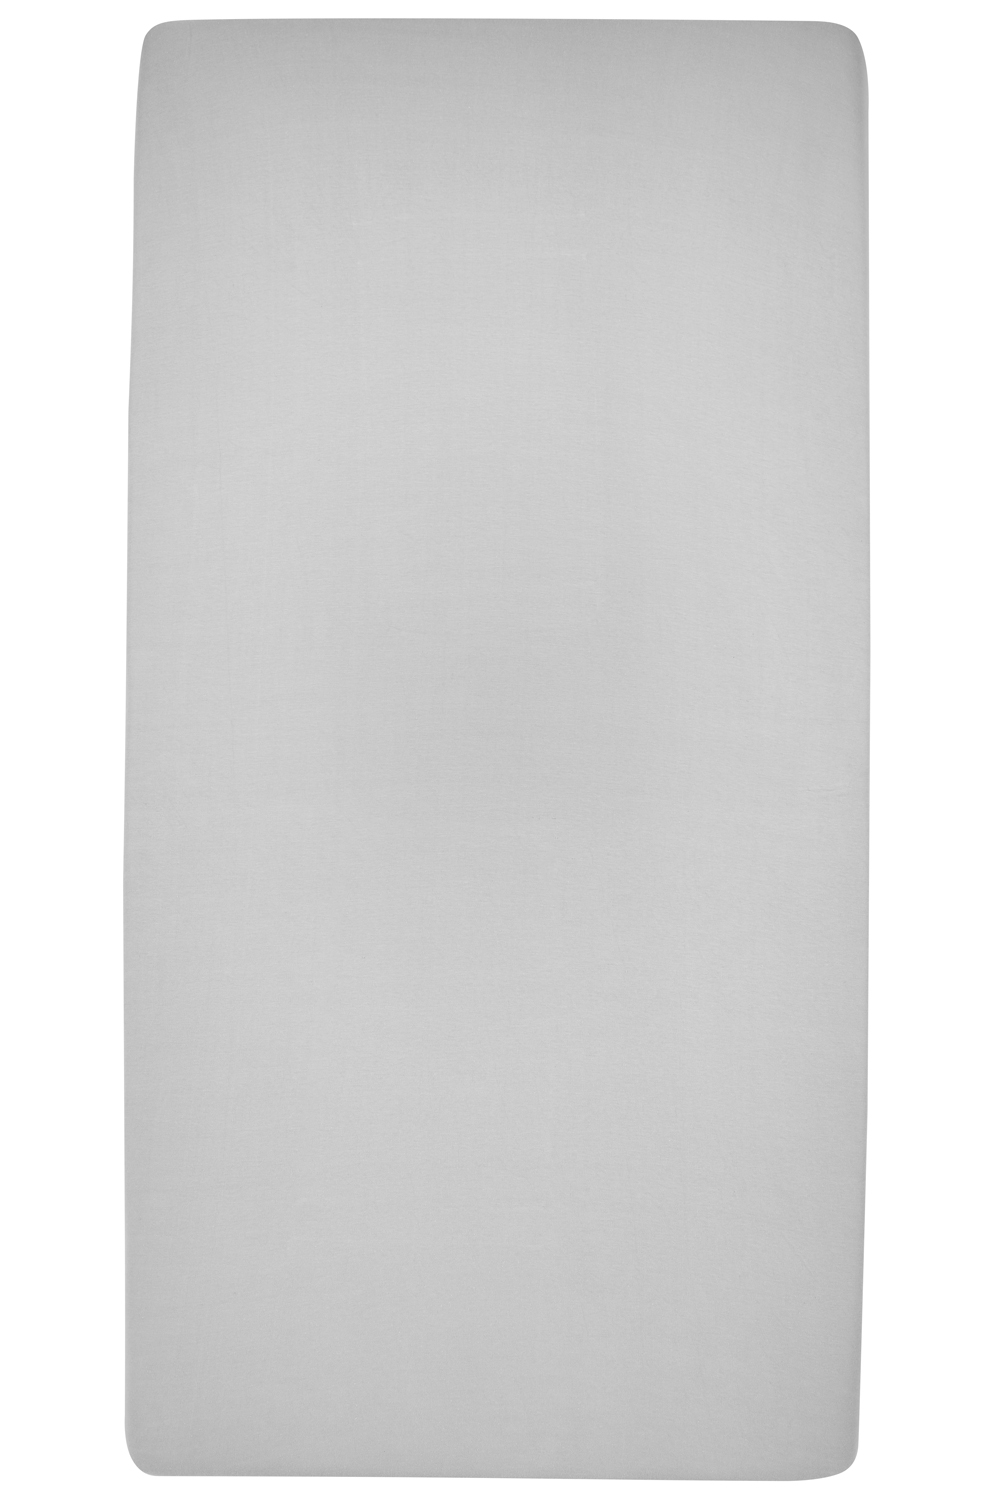 Spannbettlaken Laufgittermatratze Uni - light grey - 75x95cm